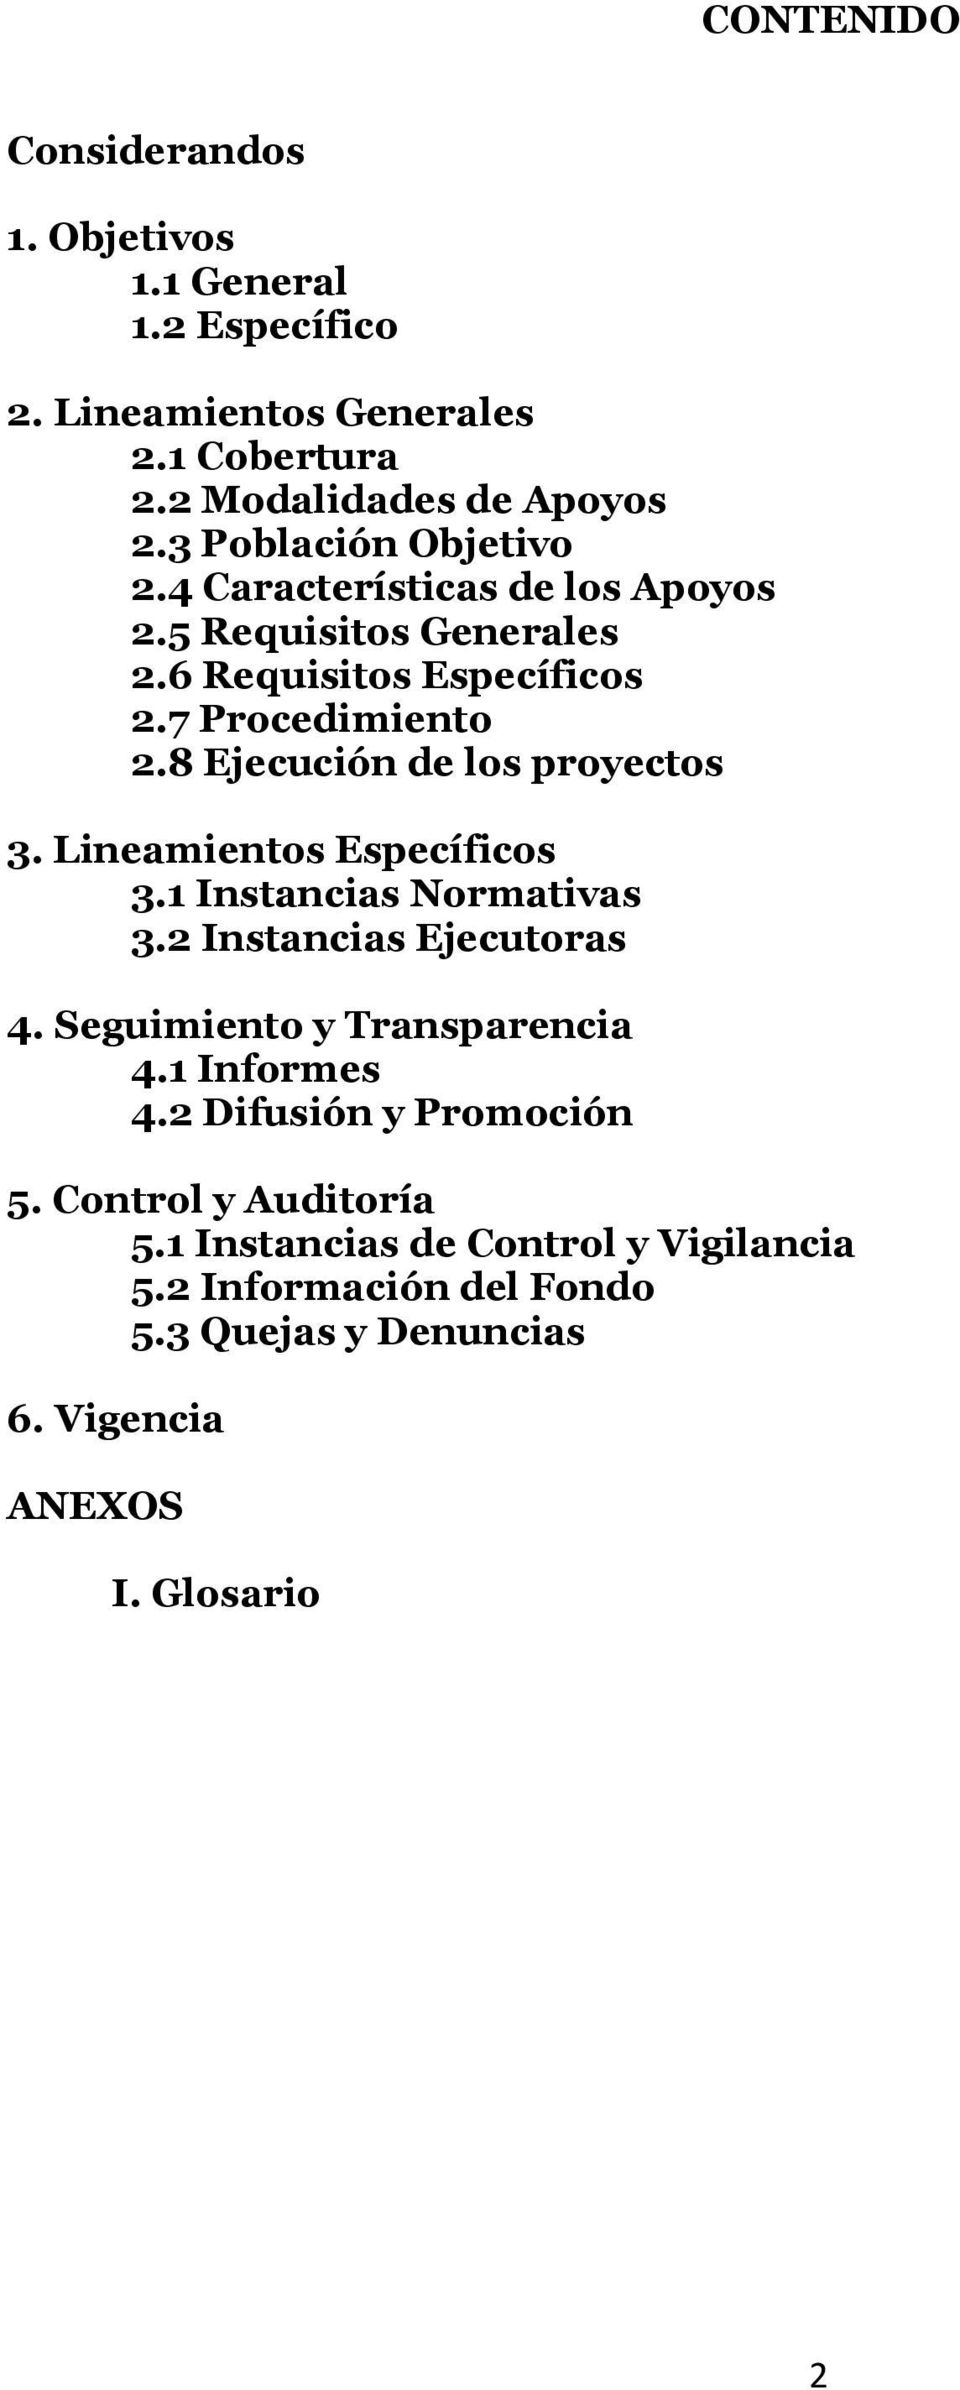 8 Ejecución de los proyectos 3. Lineamientos Específicos 3.1 Instancias Normativas 3.2 Instancias Ejecutoras 4. Seguimiento y Transparencia 4.